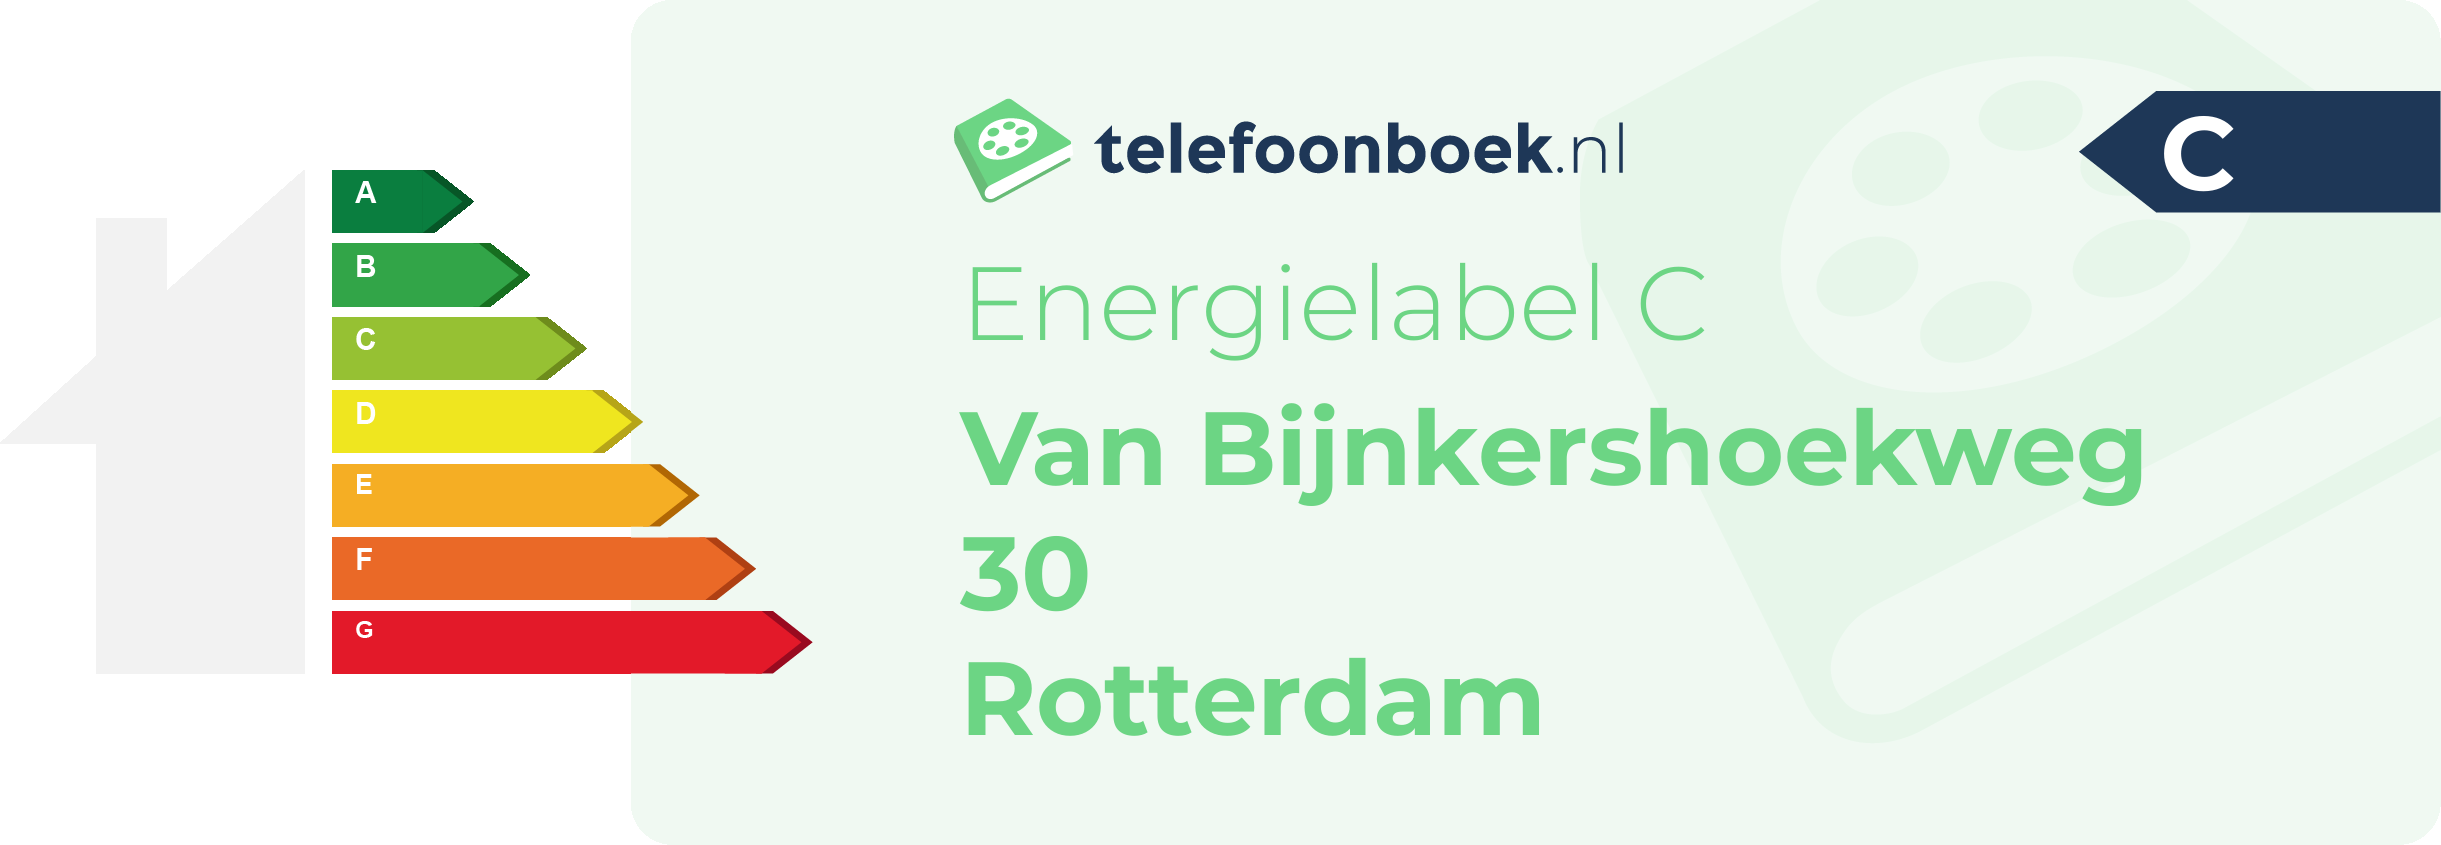 Energielabel Van Bijnkershoekweg 30 Rotterdam